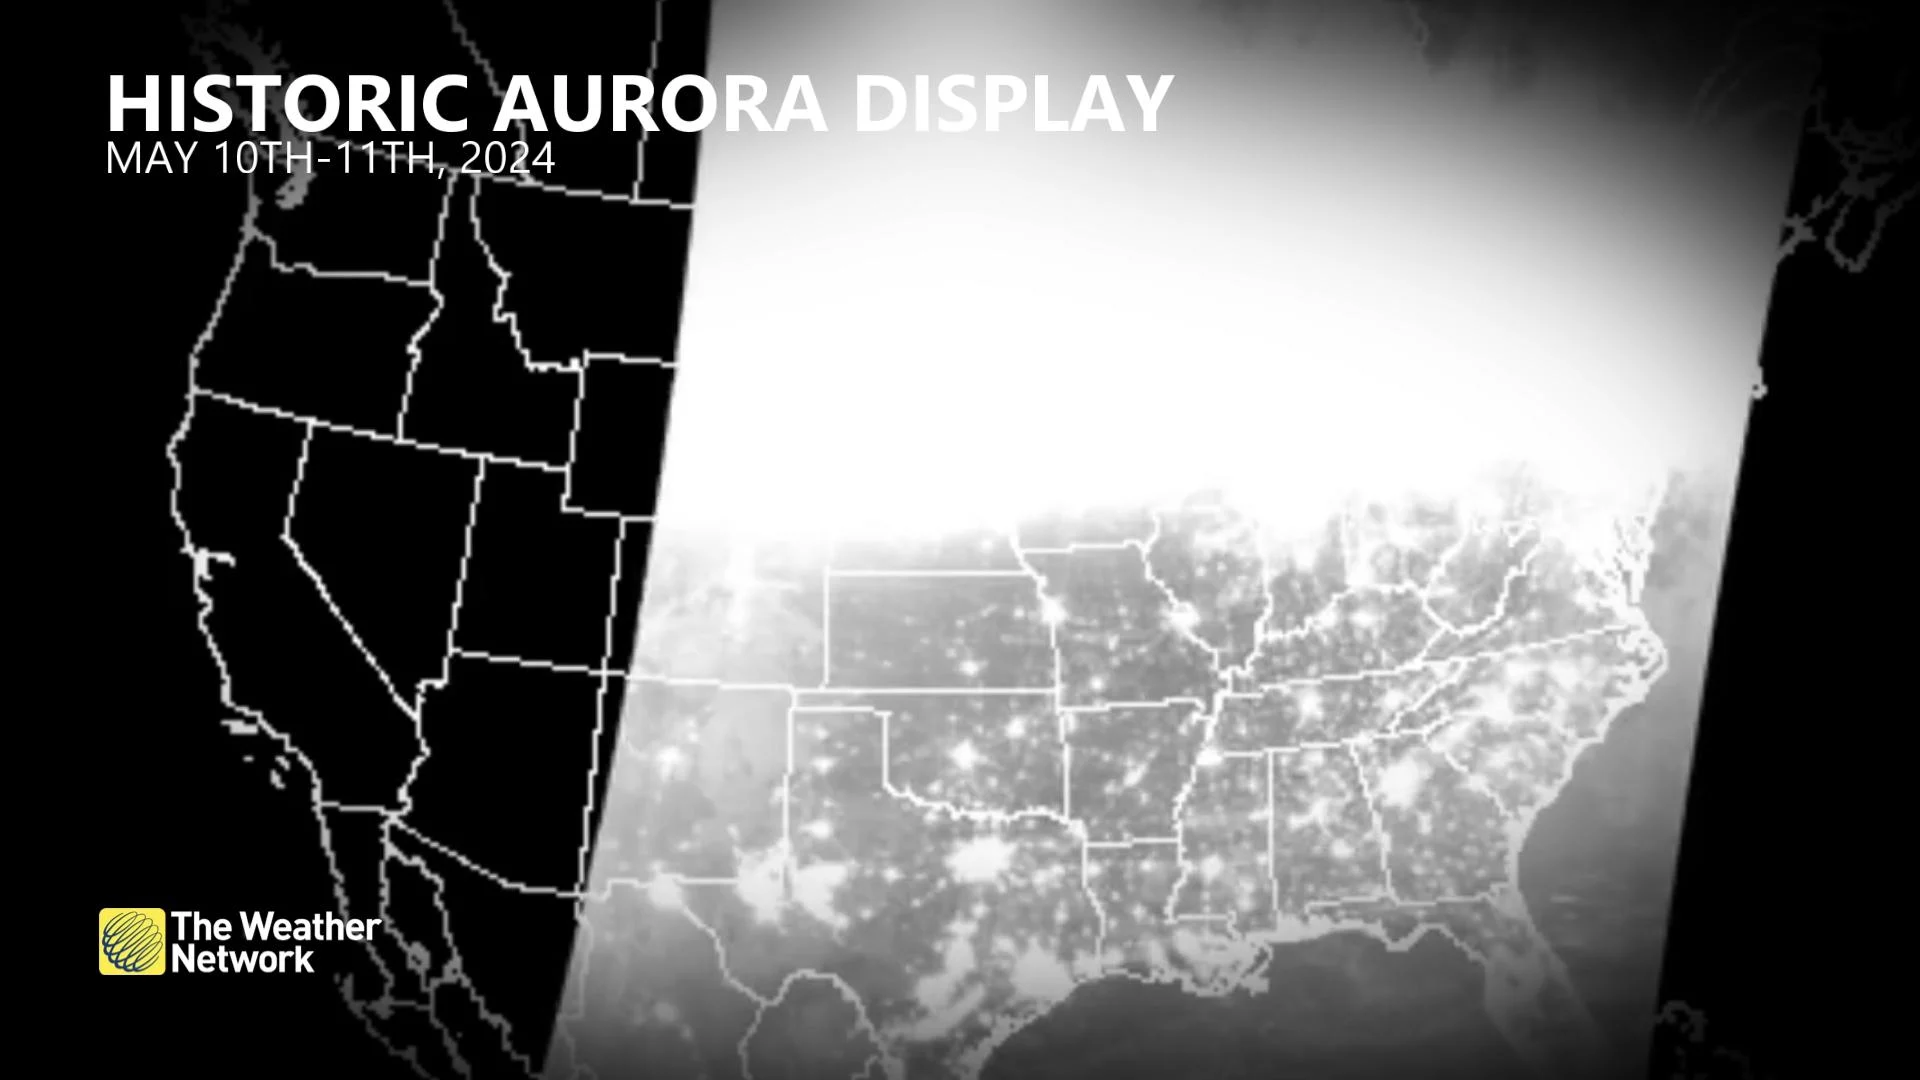 Historic aurora display May 10-11, 2024